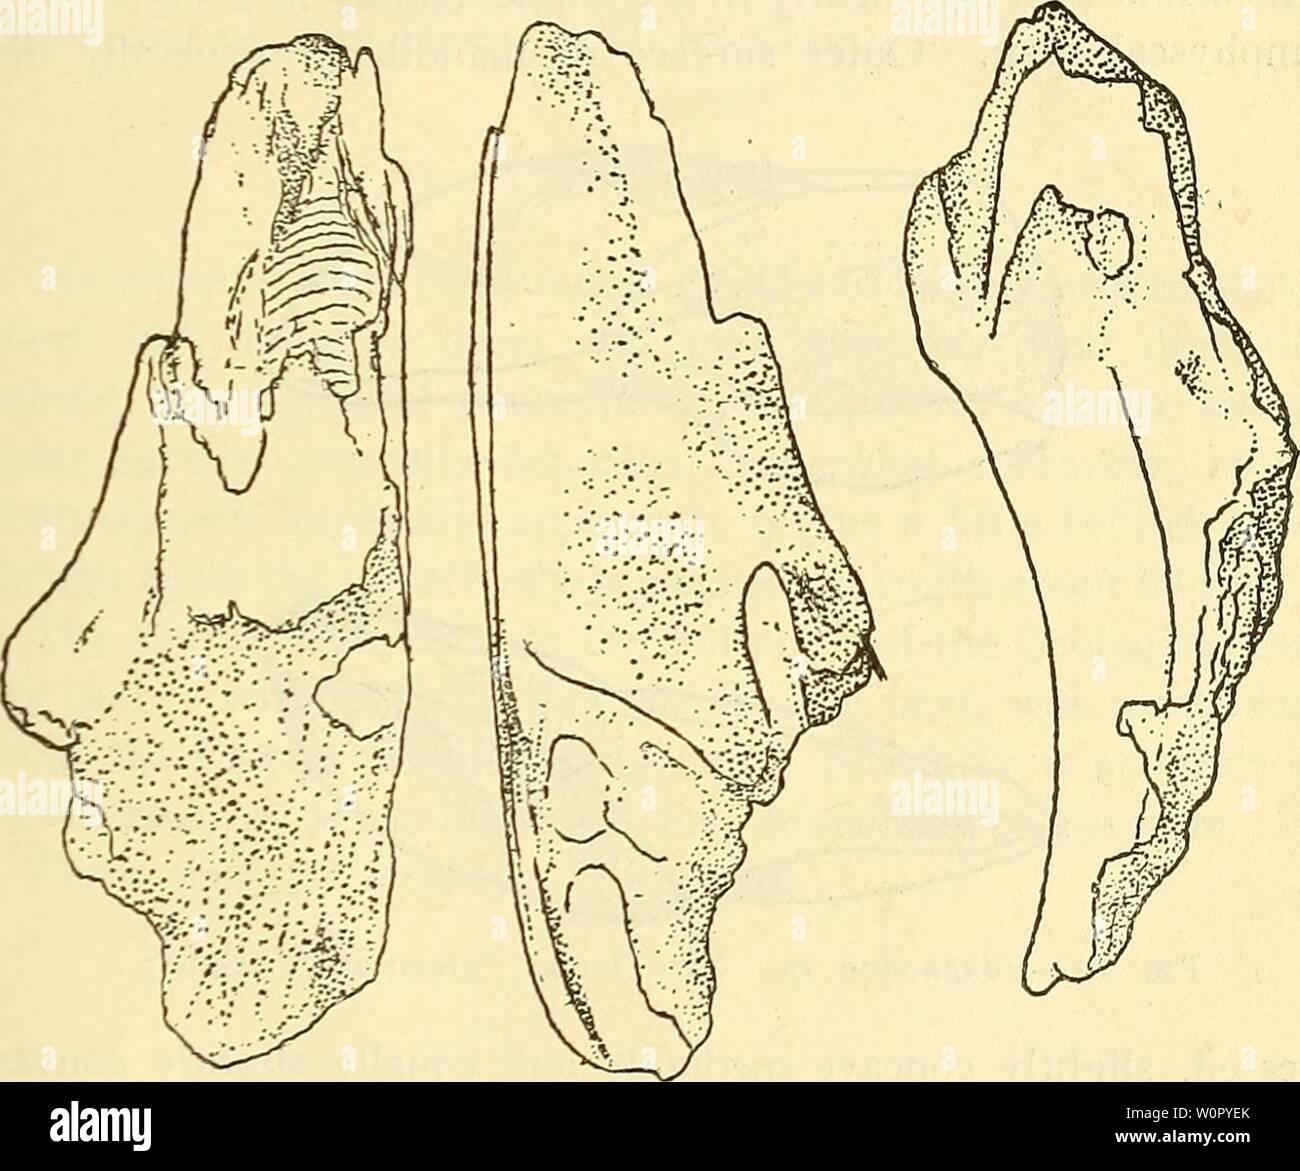 Immagine di archivio da pagina 174 di una descrizione delle fonti fossili. Una descrizione dei pesci fossili rimane del Cretaceo, Eocene e Miocene formazioni del New Jersey descriptionoffos00fowl Anno: 1911 HOLOCEPHALI. 129 Formazione e località. Conosciuta solo da' un imperfetto l'uomo- dibular ascritto alla 'Greensand del New Jersey n. 5' [l'Hornerstown marl, K.] e ora nel museo americano a New York. Edaphodon sp. Destro premuto palatale, un nonnulla per più di due volte più a lungo di larghezza e profondità di circa un terzo di lunghezza. Superficie superiore con una profonda ampia gronda terminante in una fossa profonda, anteriore al quale area Foto Stock